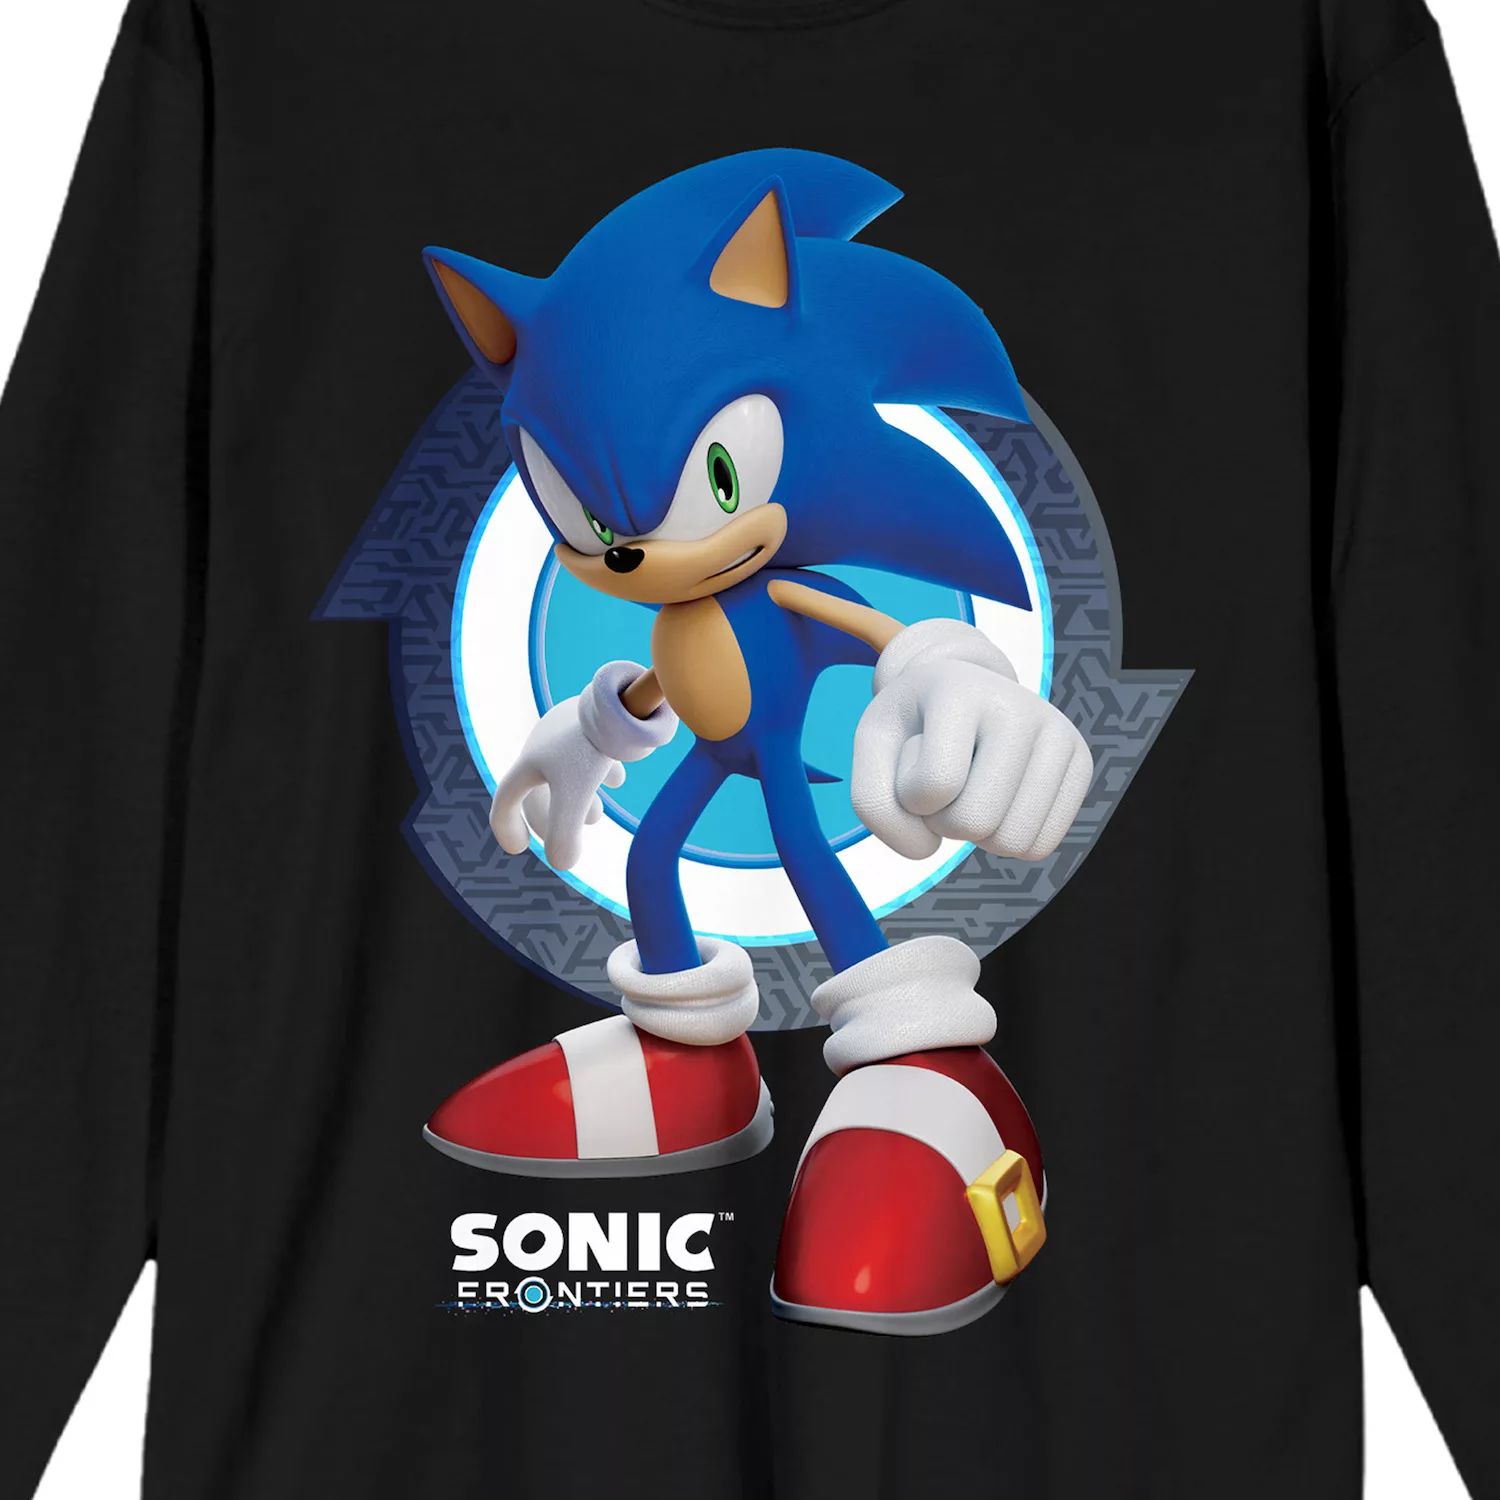 Мужская футболка с графикой Nintendo Sonic Frontiers Sonic Licensed Character игра sonic frontiers nintendo switch русская версия